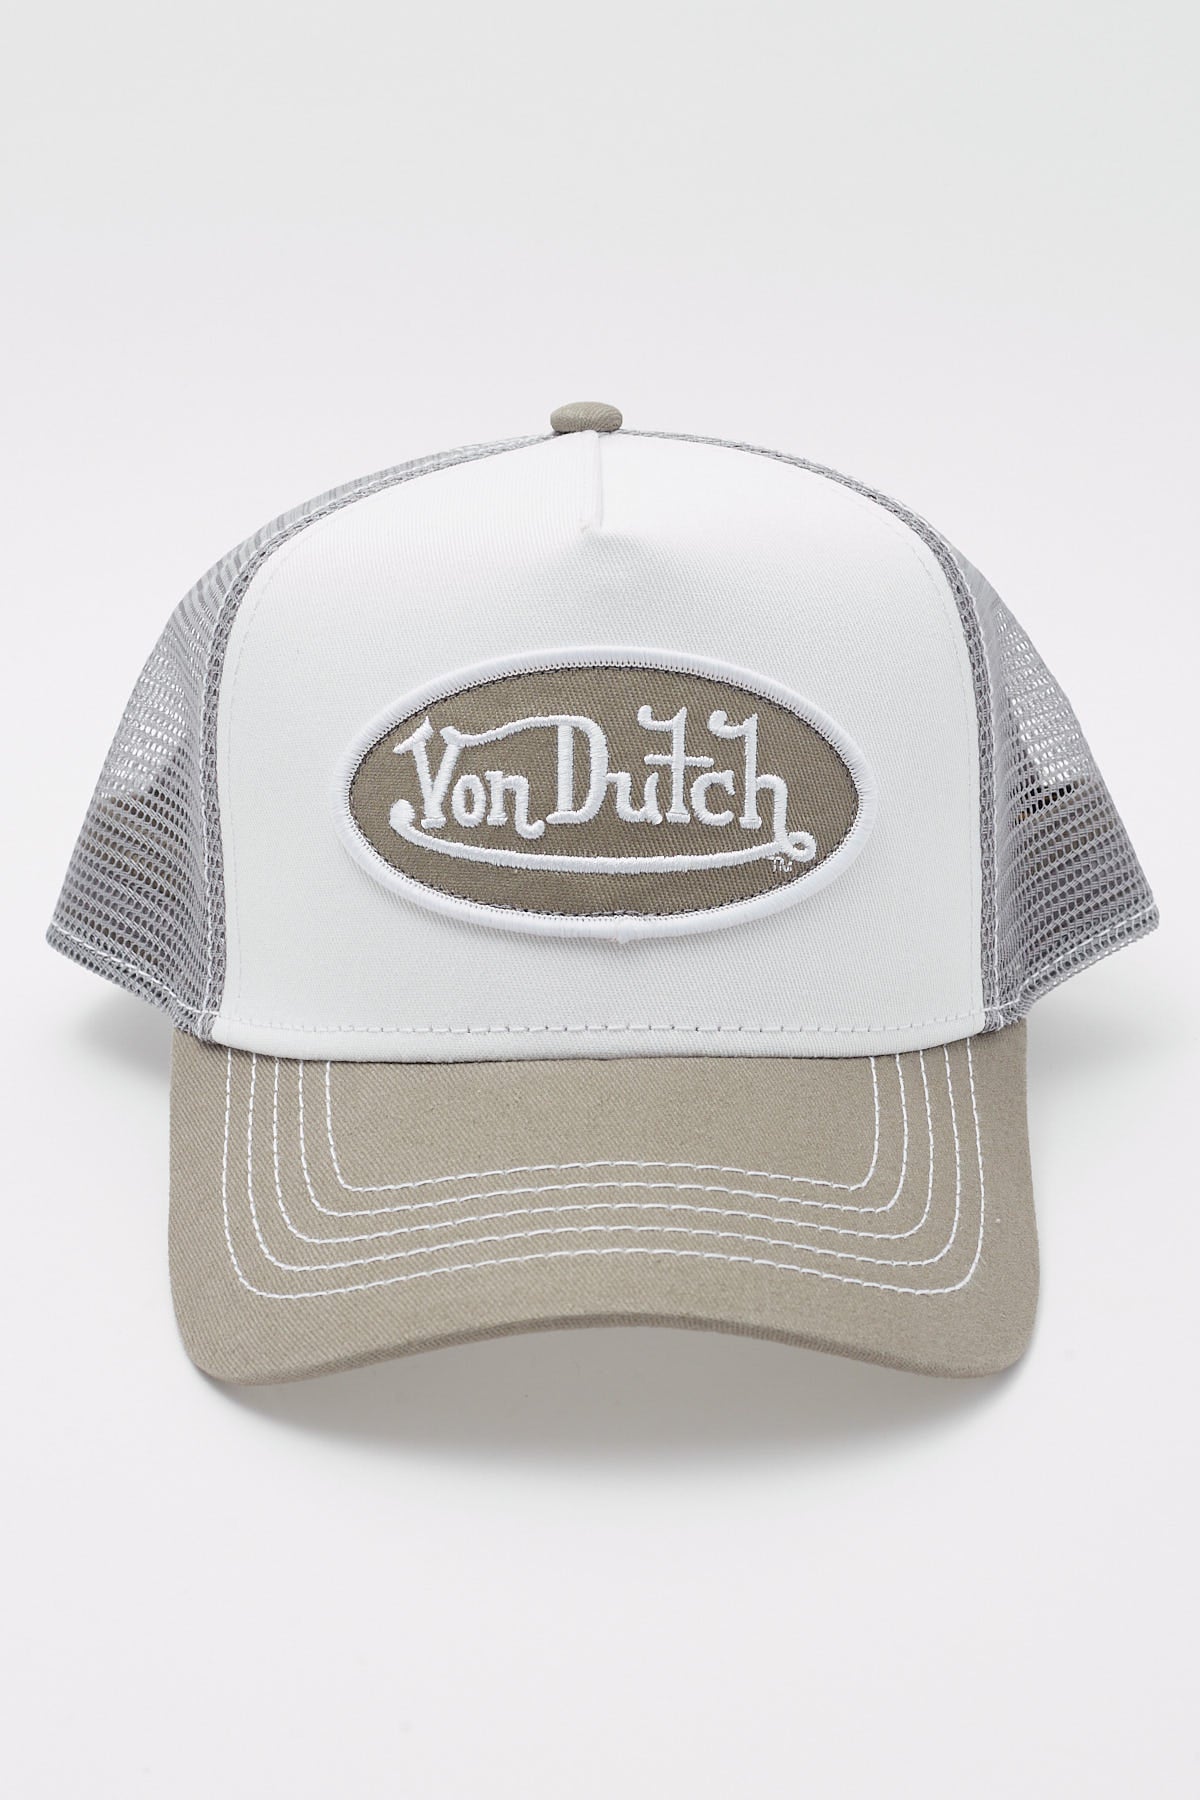 Von Dutch Grey & White Trucker White/Grey